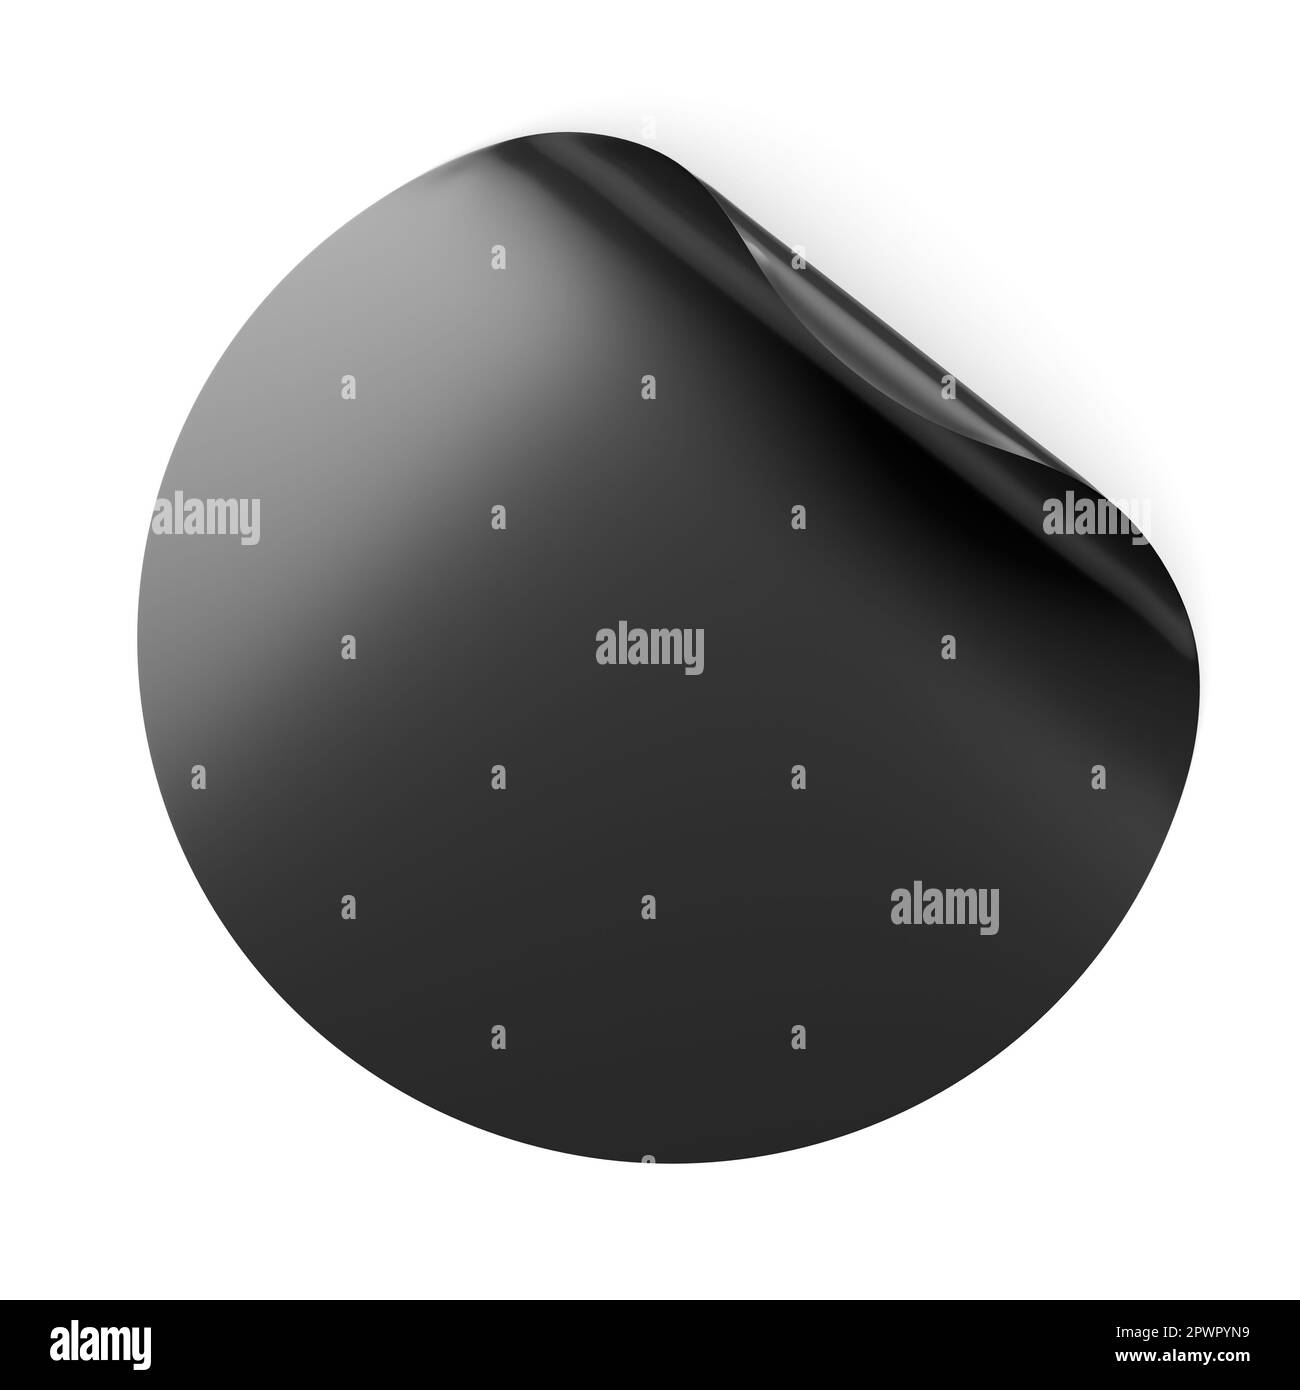 L'adesivo tondo nero vuoto è un mock up con angolo curvo. Illustrazione del rendering 3D. Foto Stock